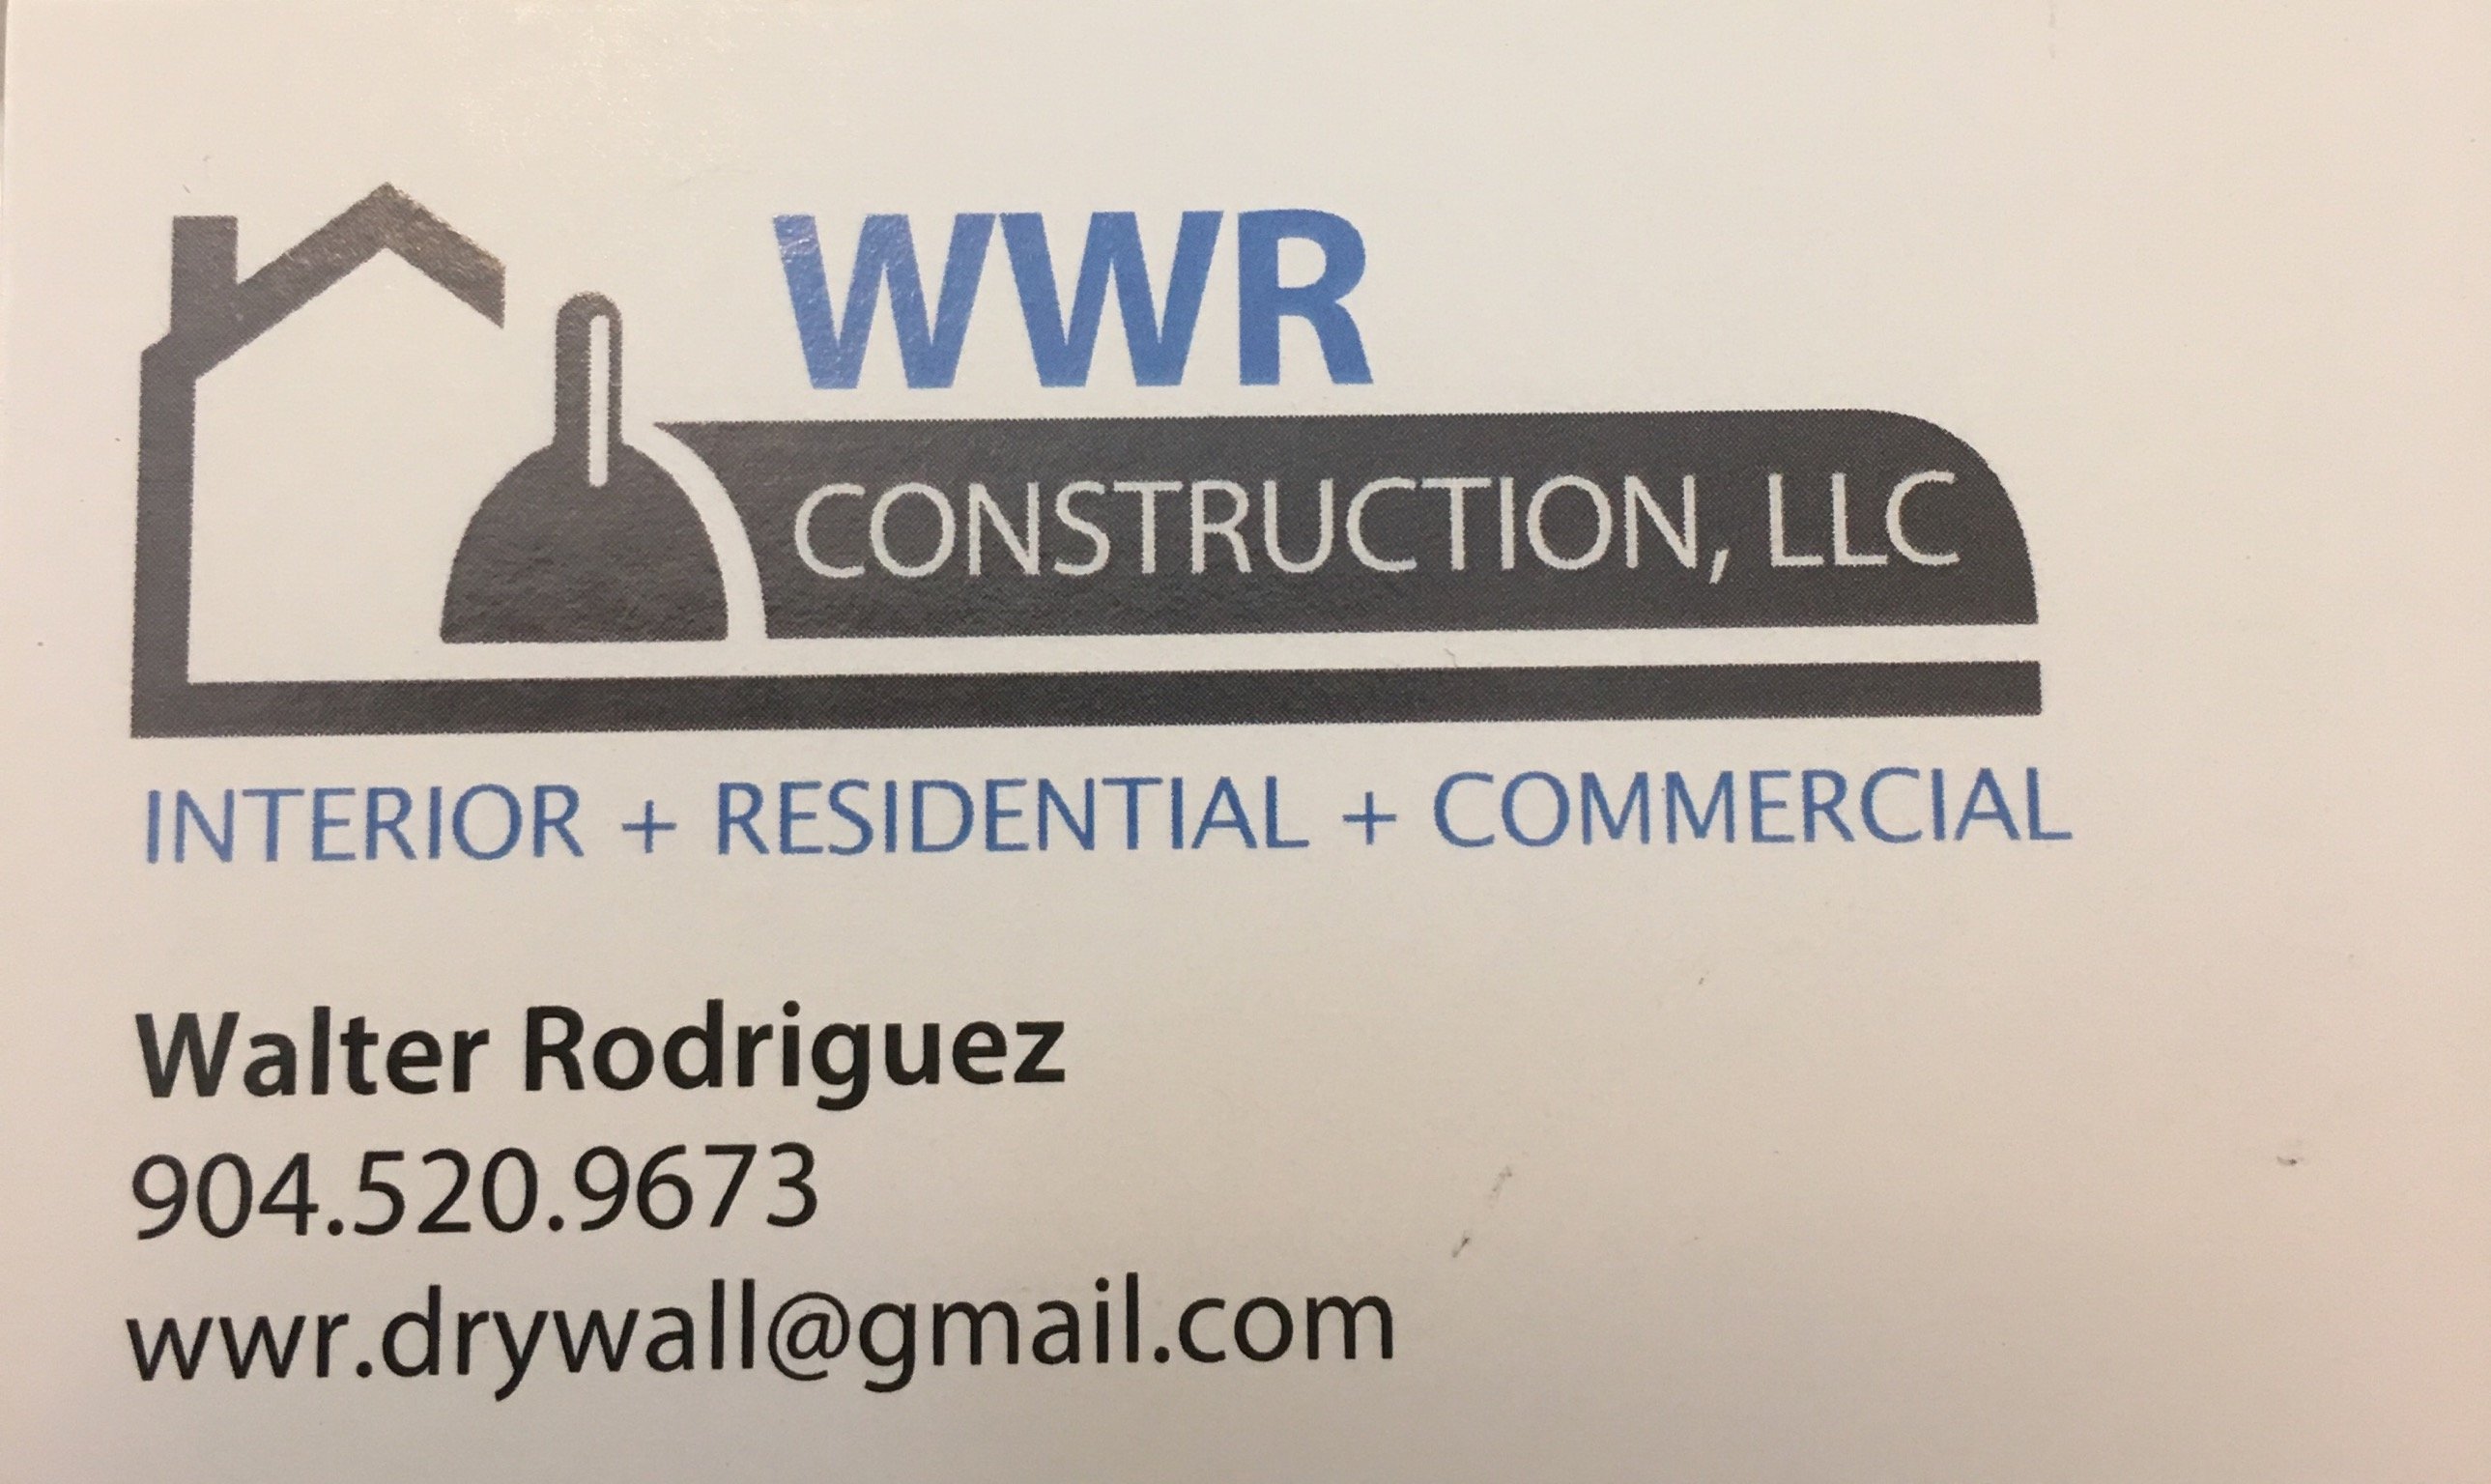 WWR Construction, LLC Logo